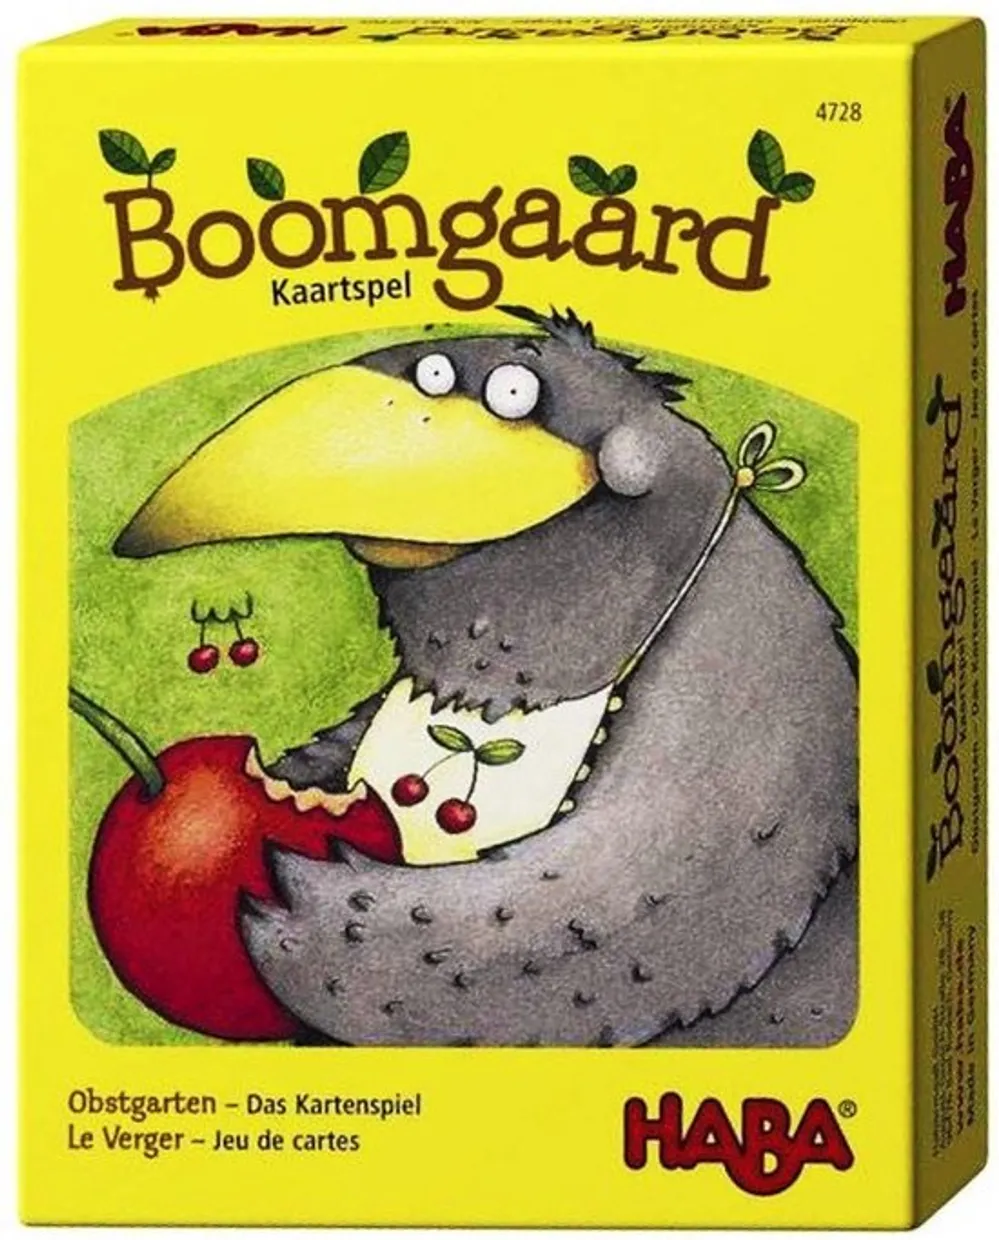 Boomgaard kaartspel